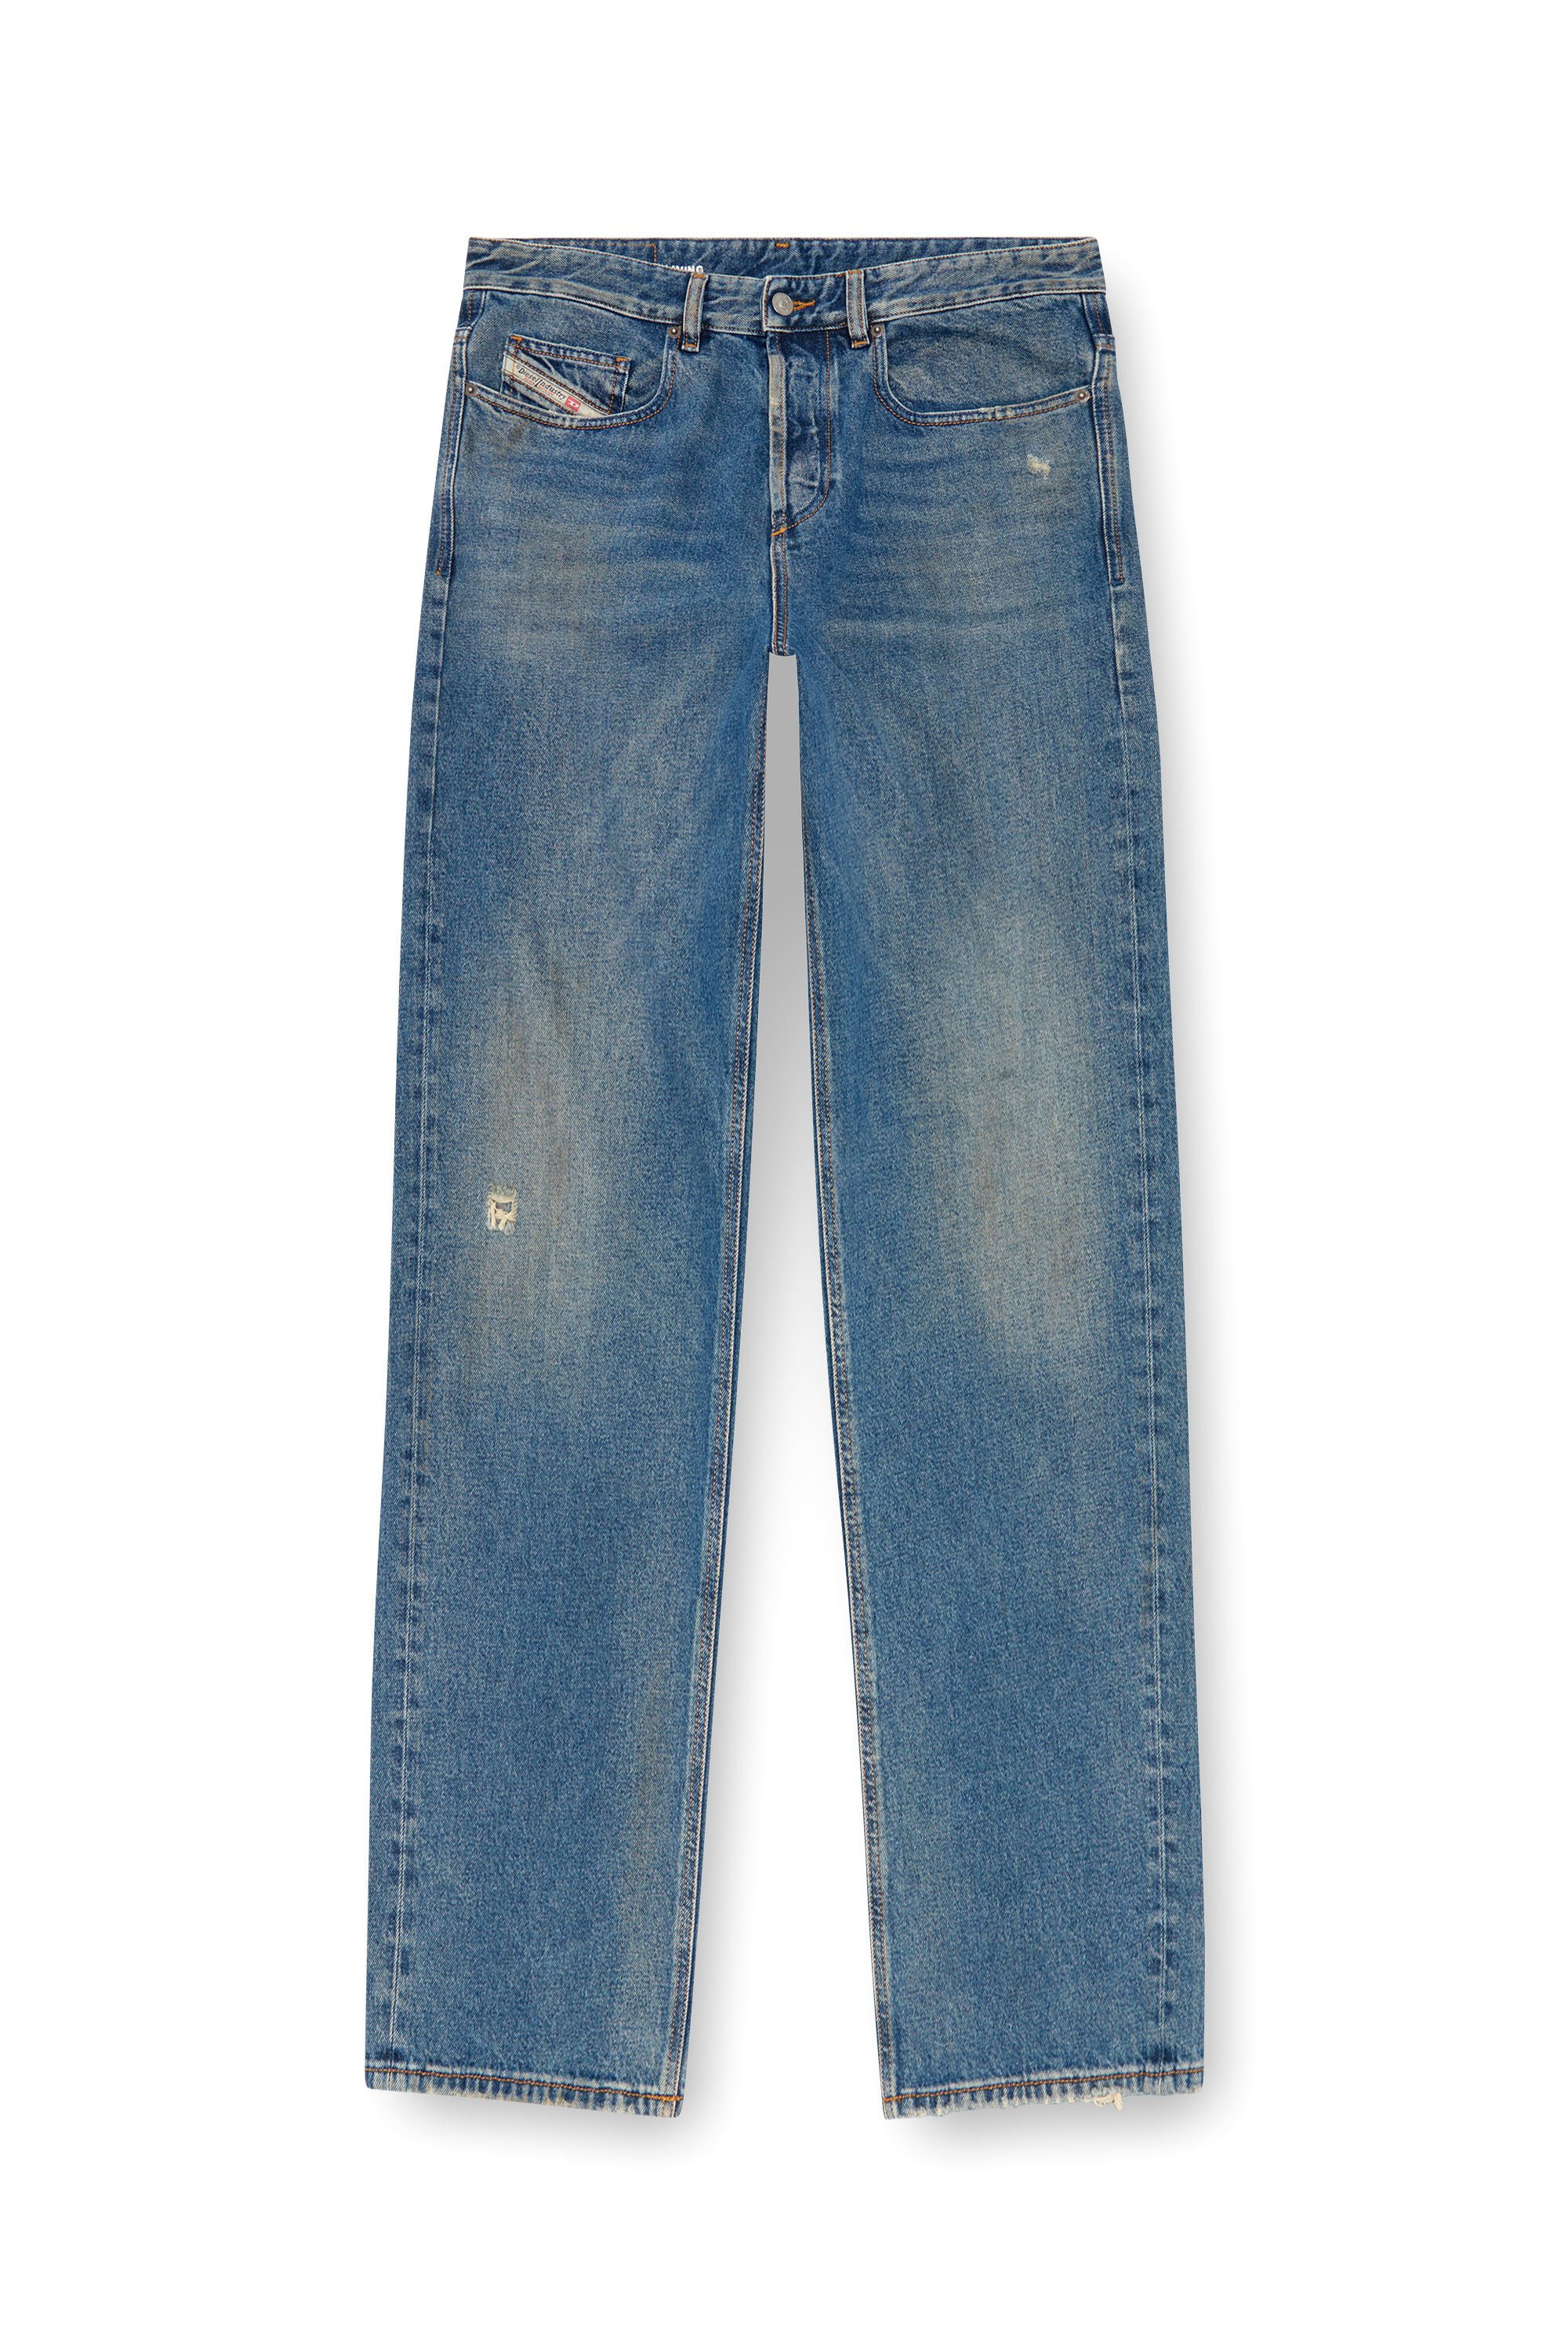 Diesel - Man Straight Jeans 2001 D-Macro 09J79, Medium blue - Image 6